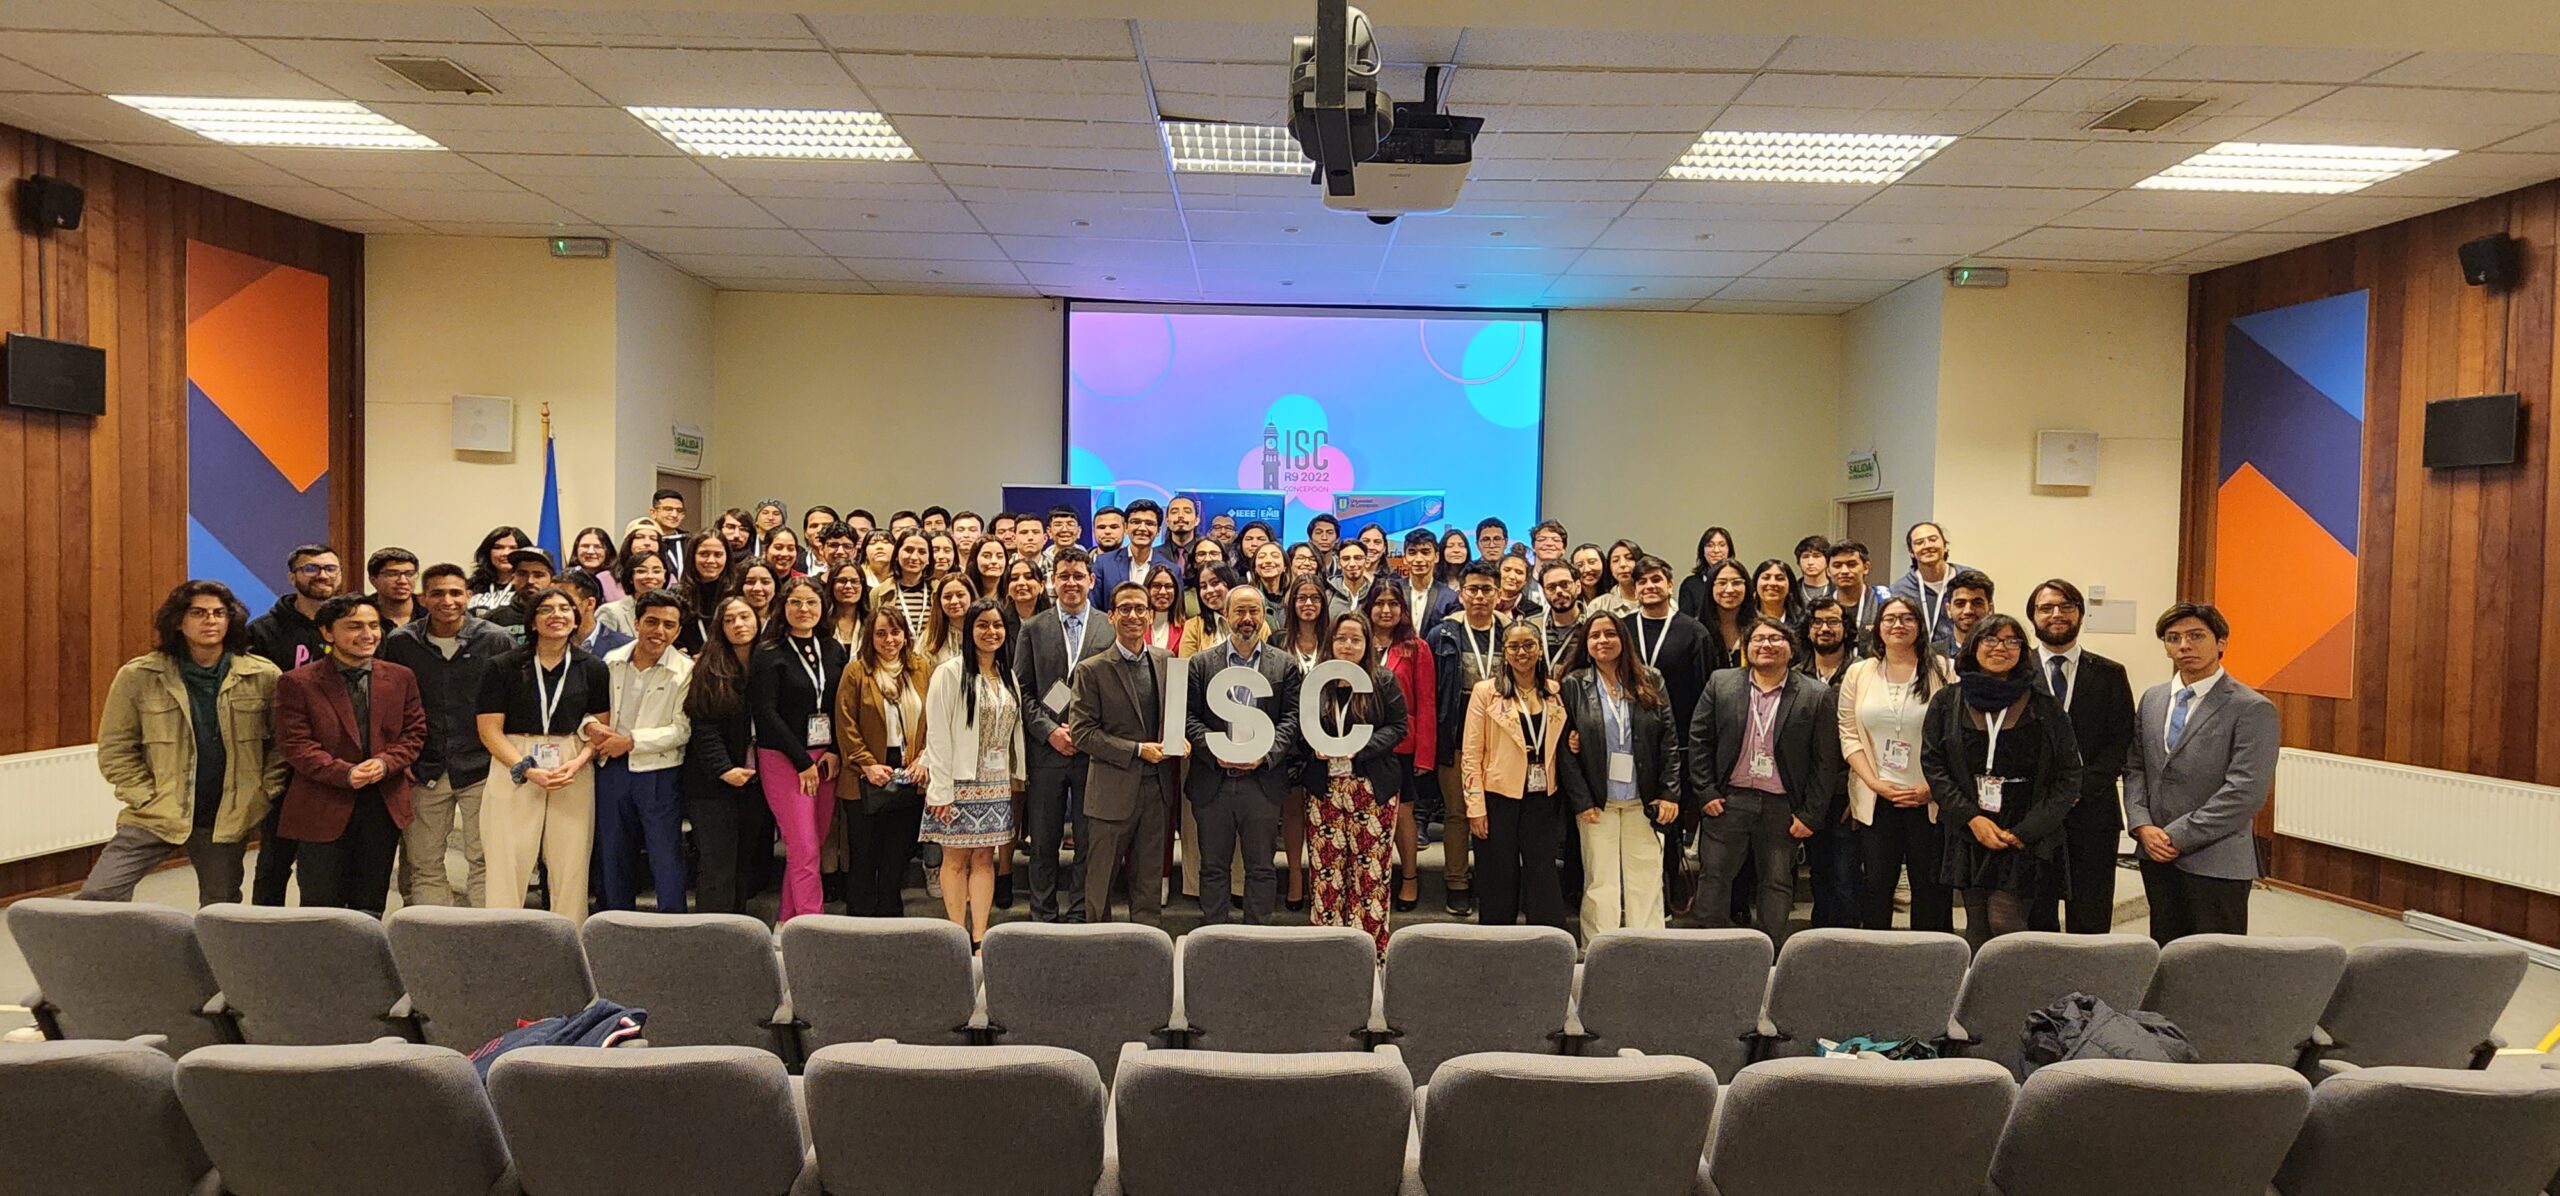 Exitoso Congreso Internacional de Estudiantes de Biomédica se realizó en la UdeC